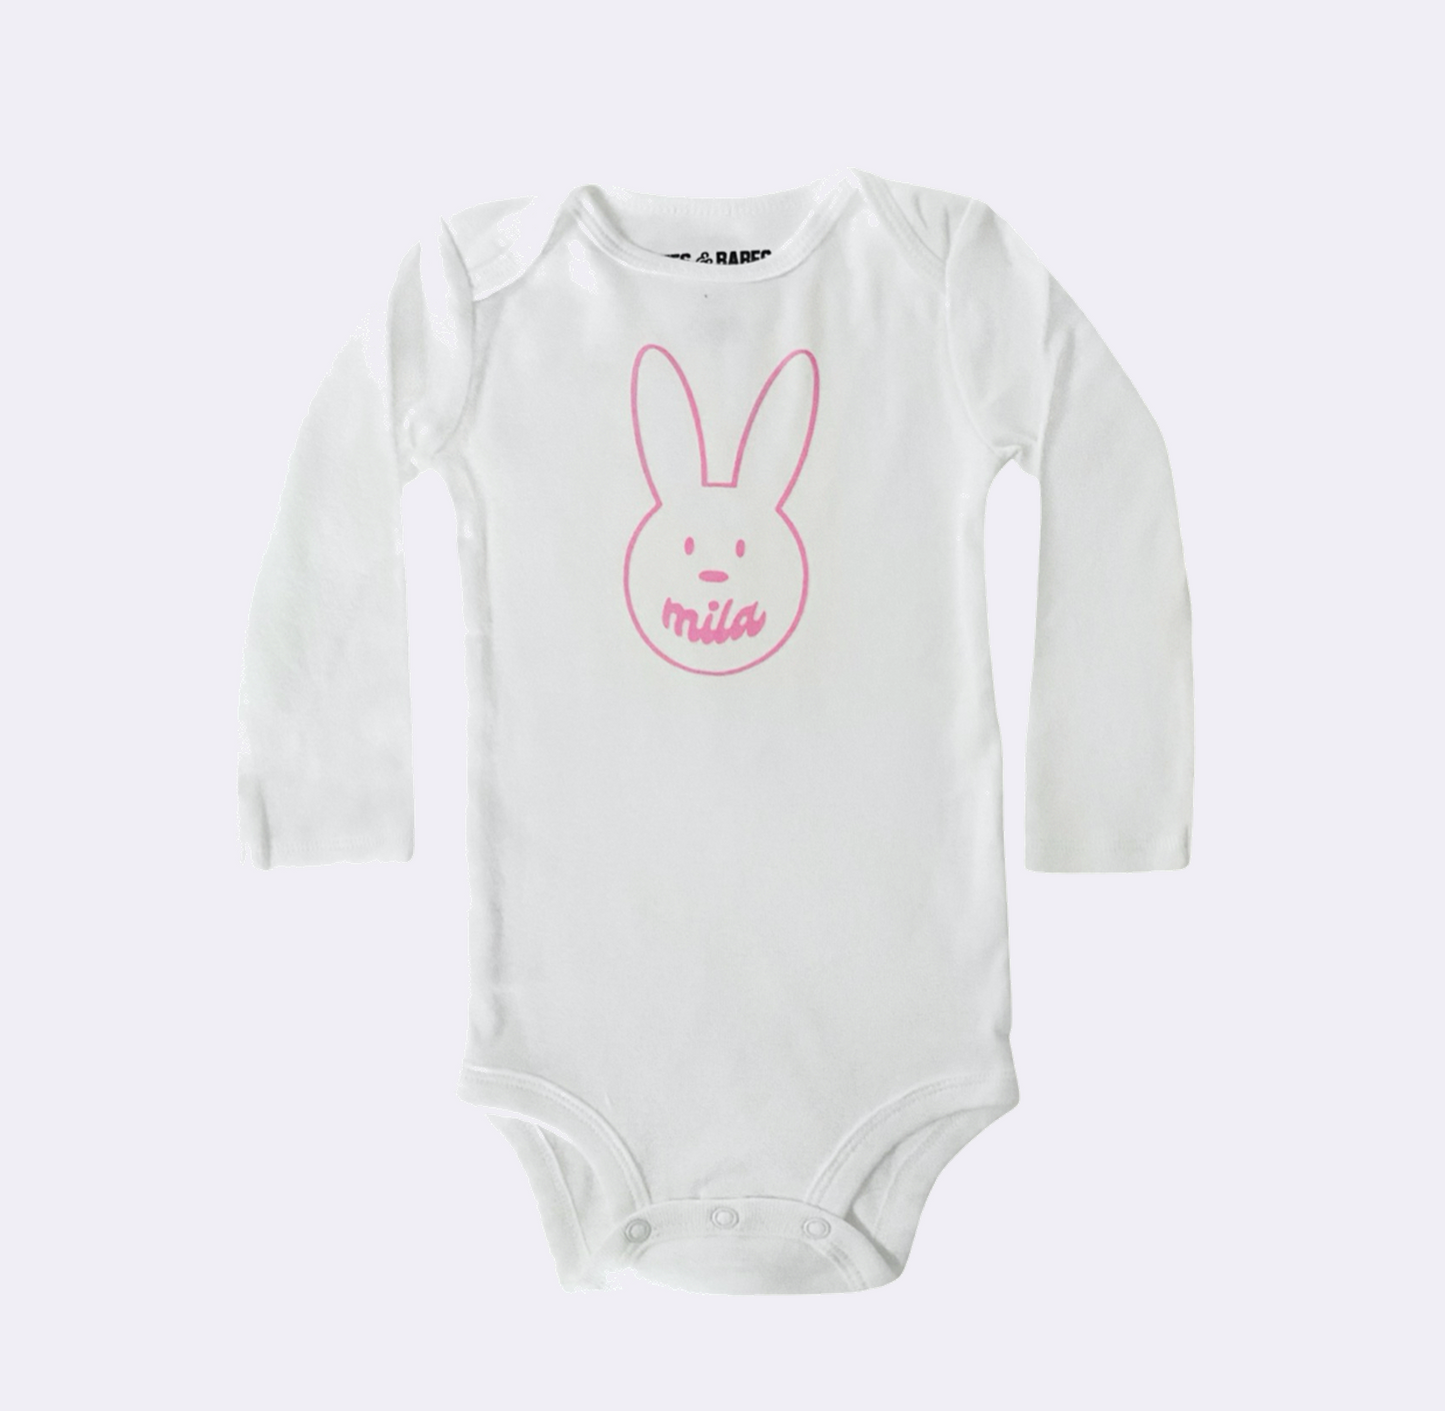 BUNNY BABESIE ♡ personalized baby bodysuit